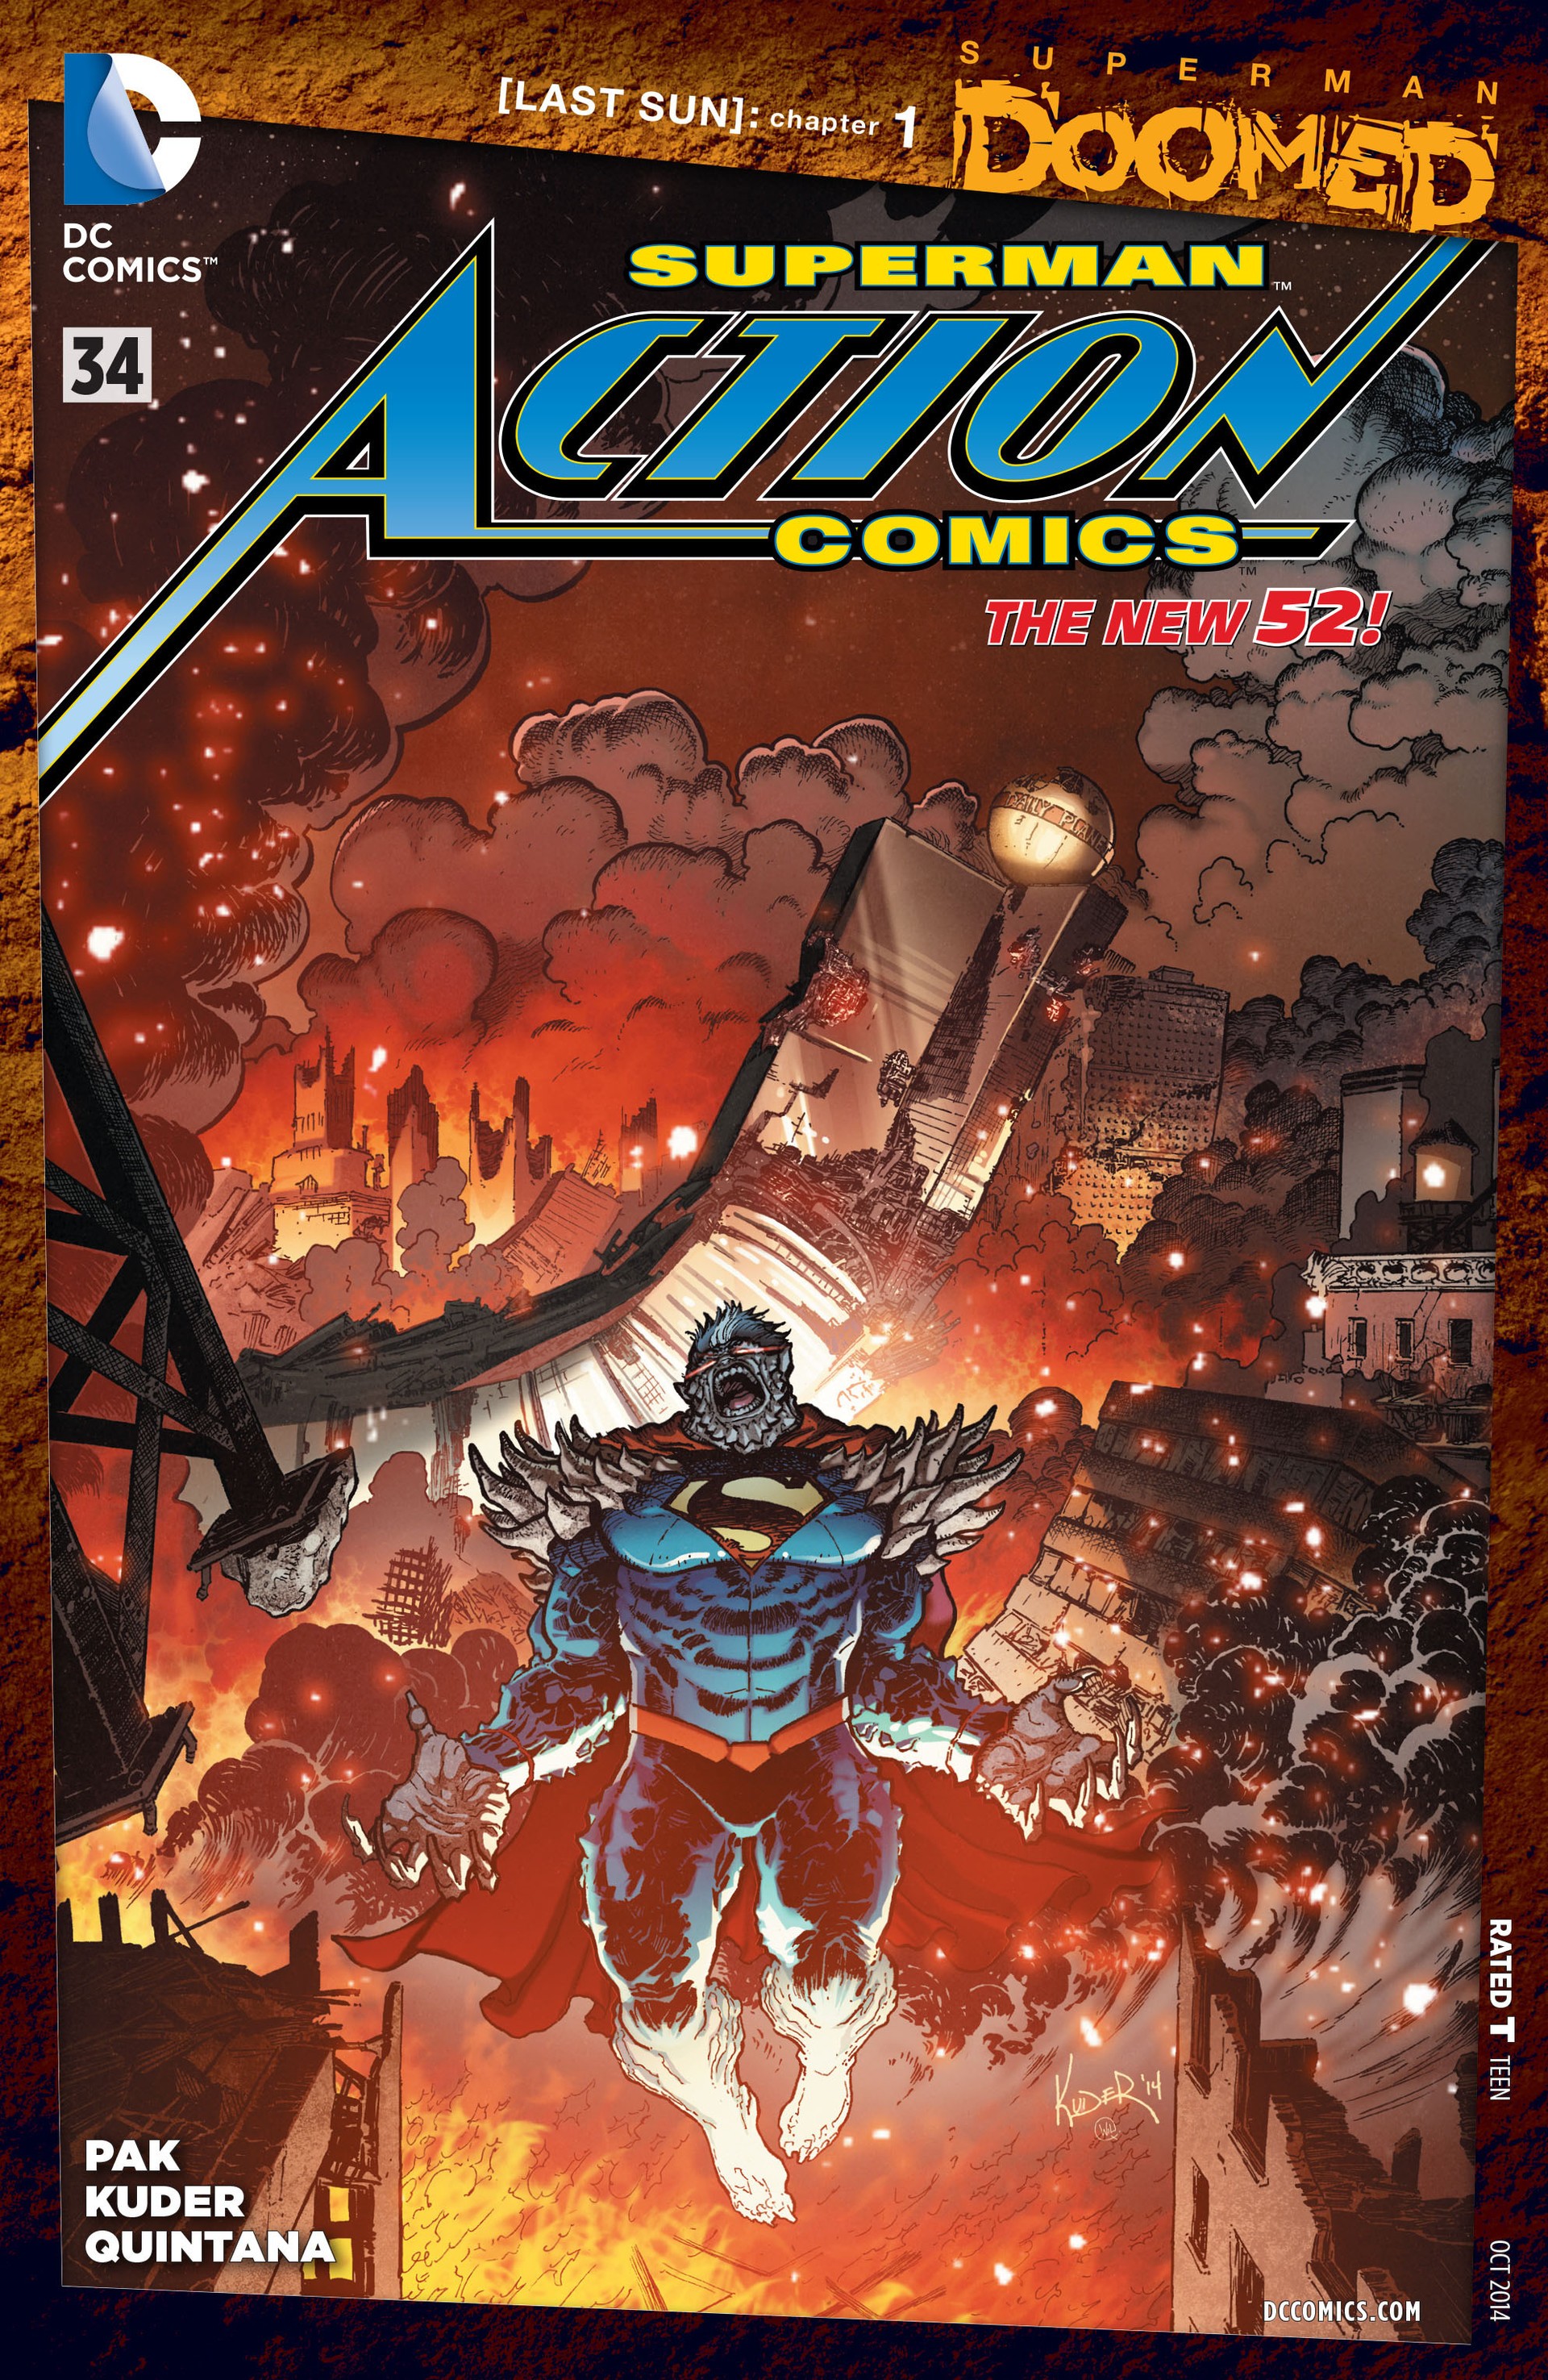 Action Comics Vol. 2 #34